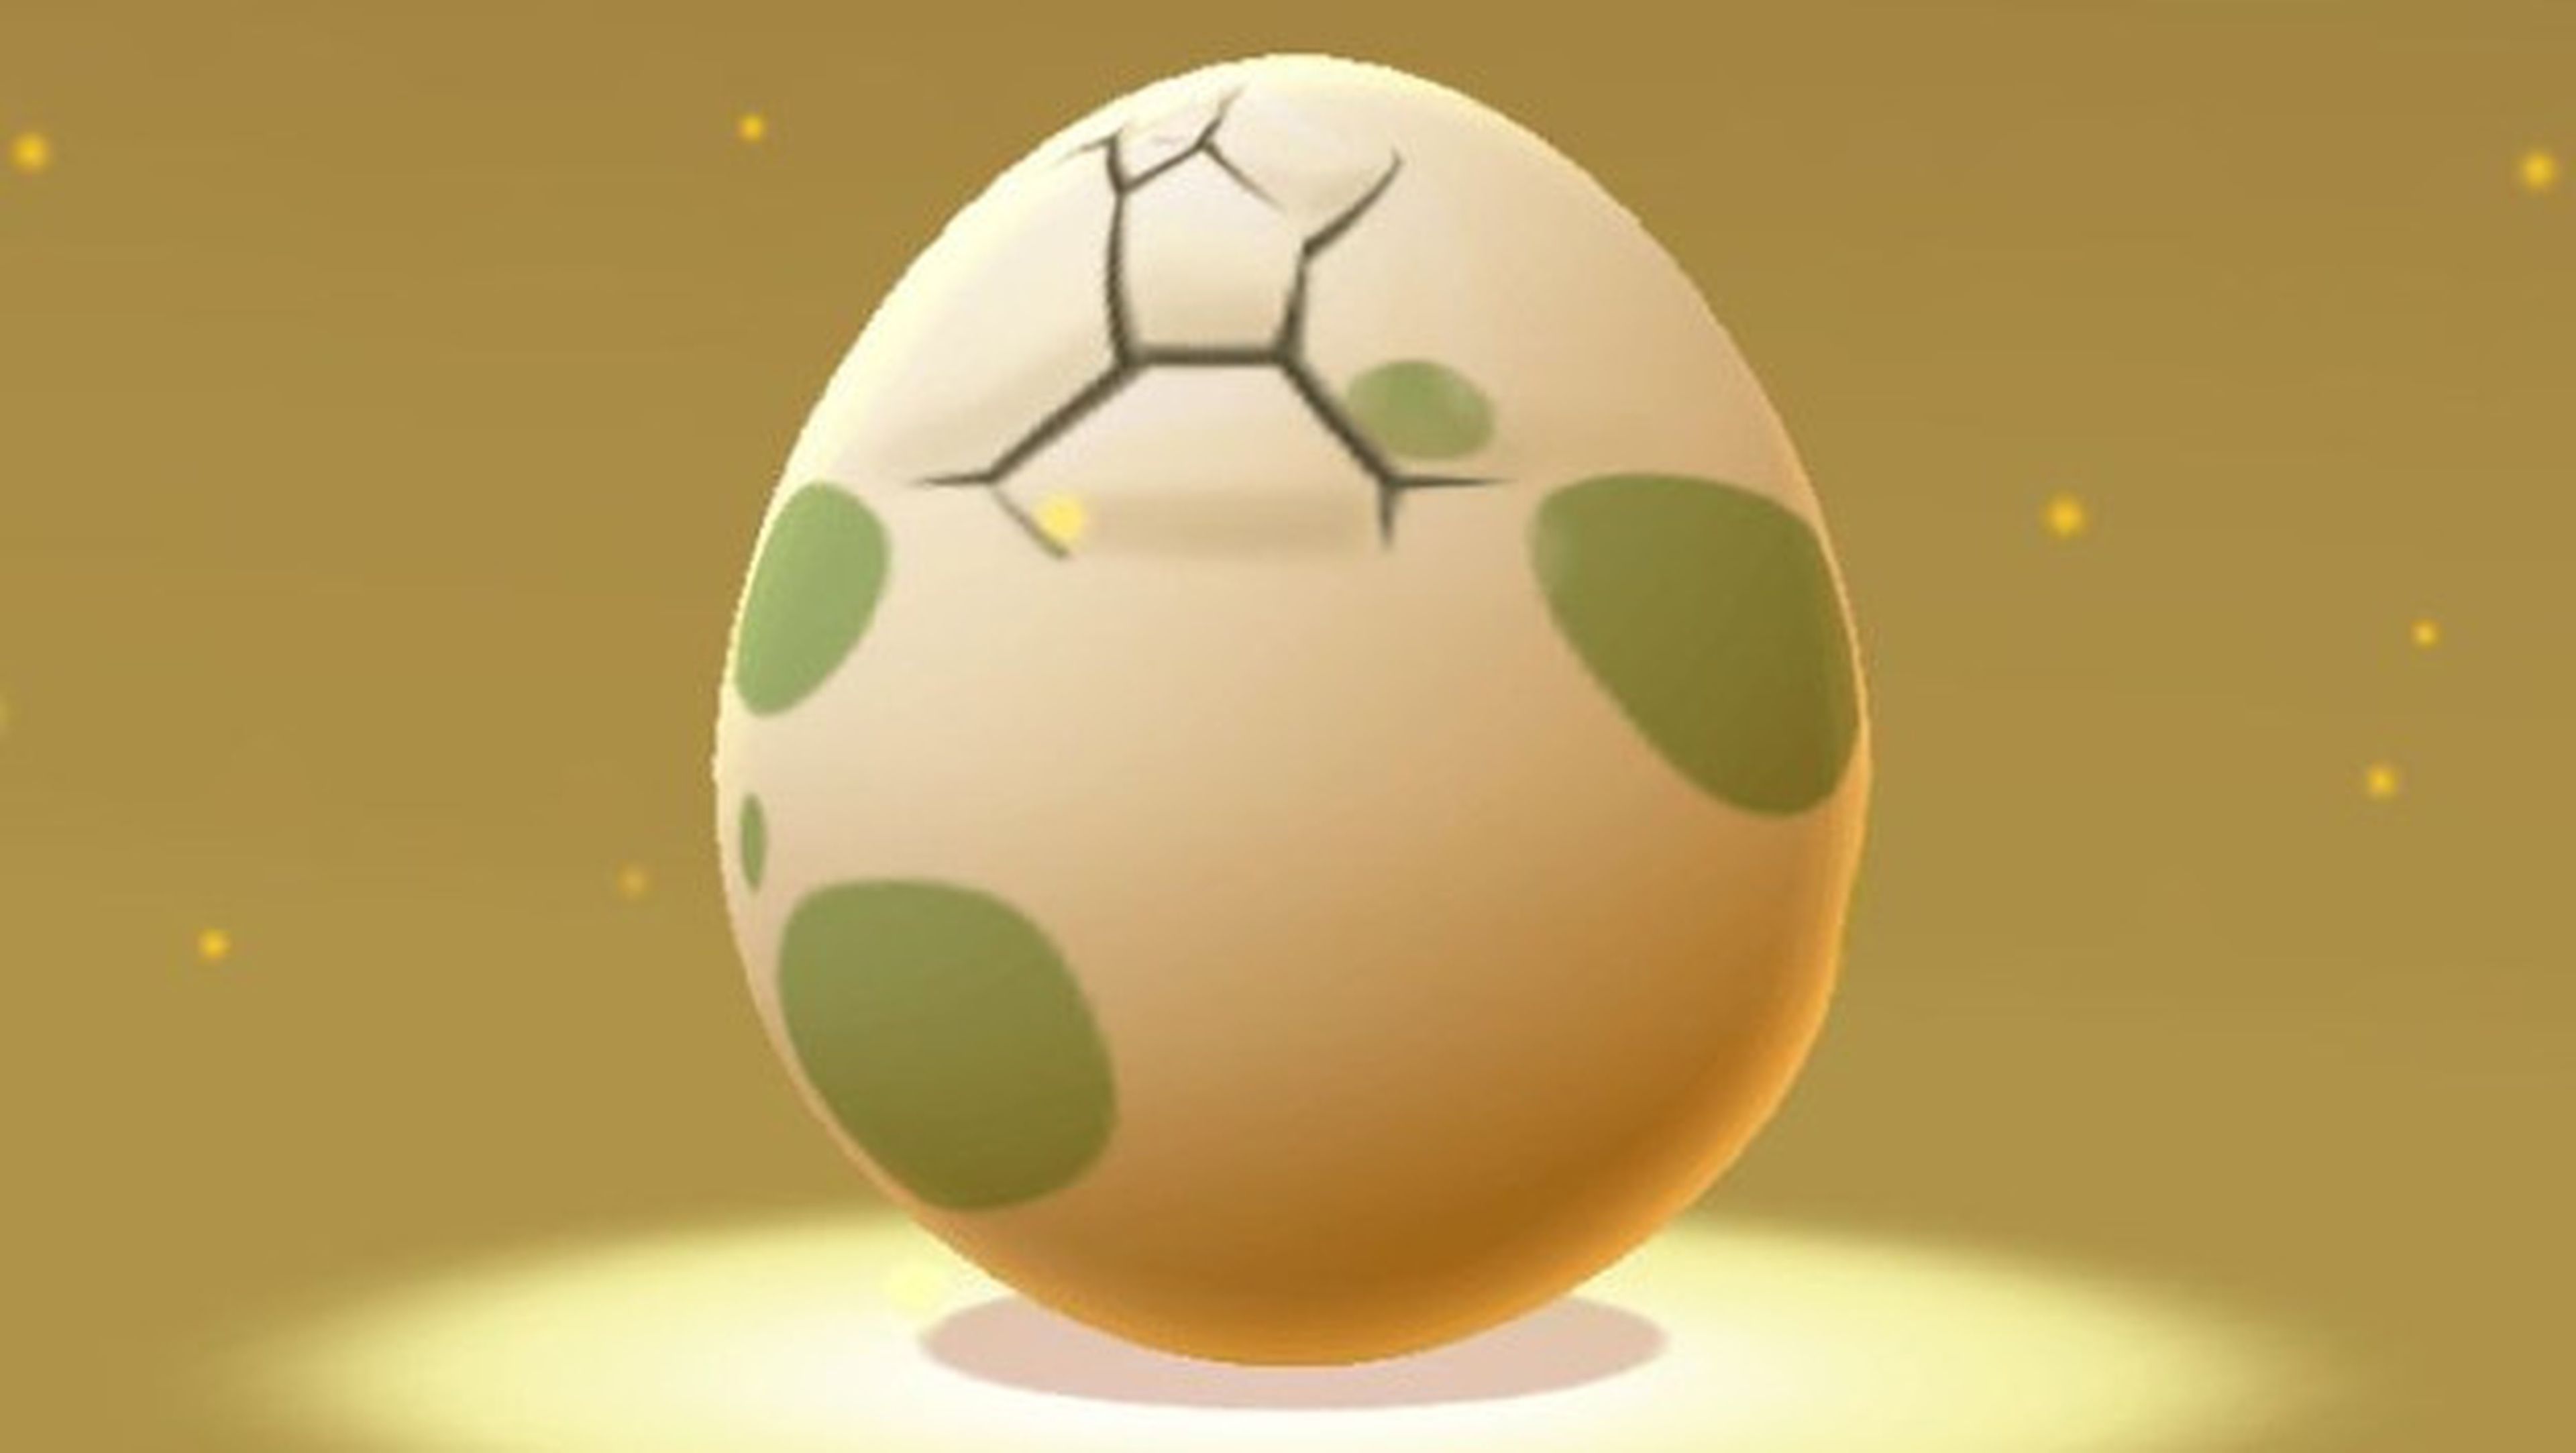 Nuevos Pokémon salen de los huevos.